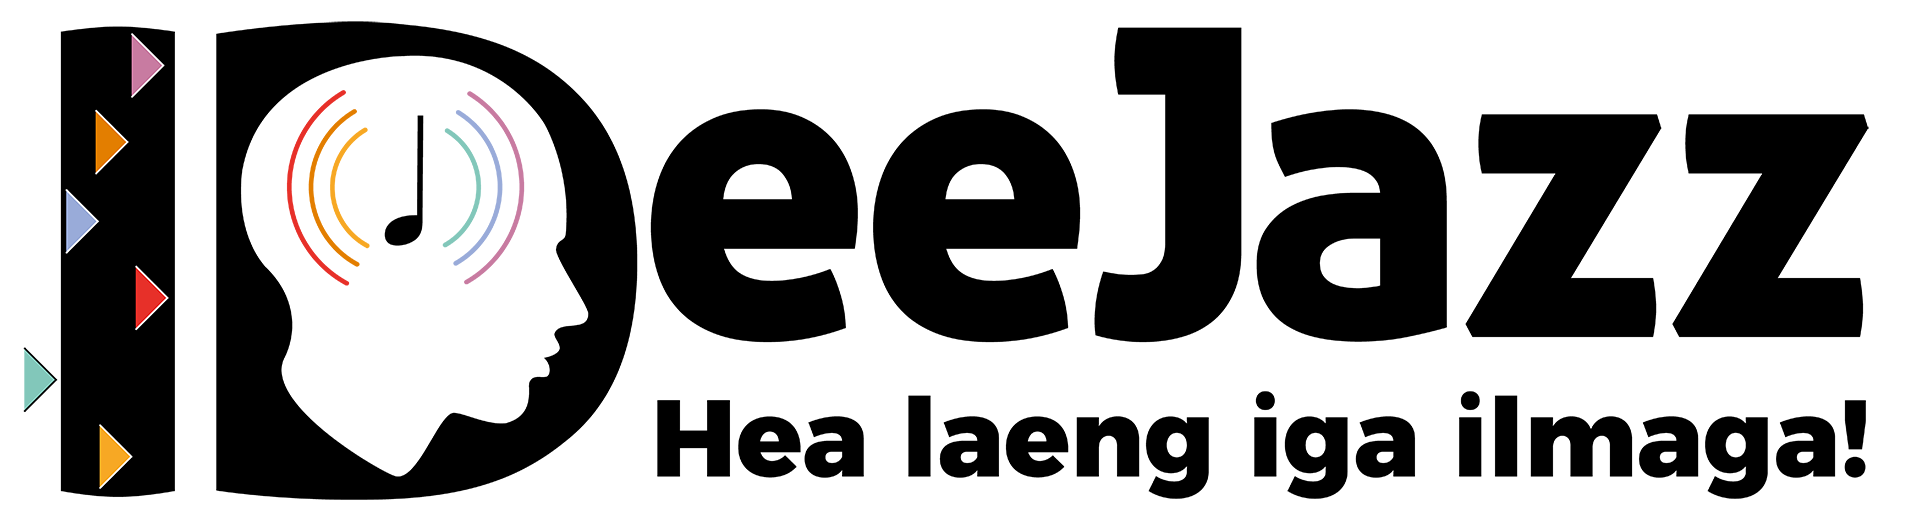 IDeeJazz logo